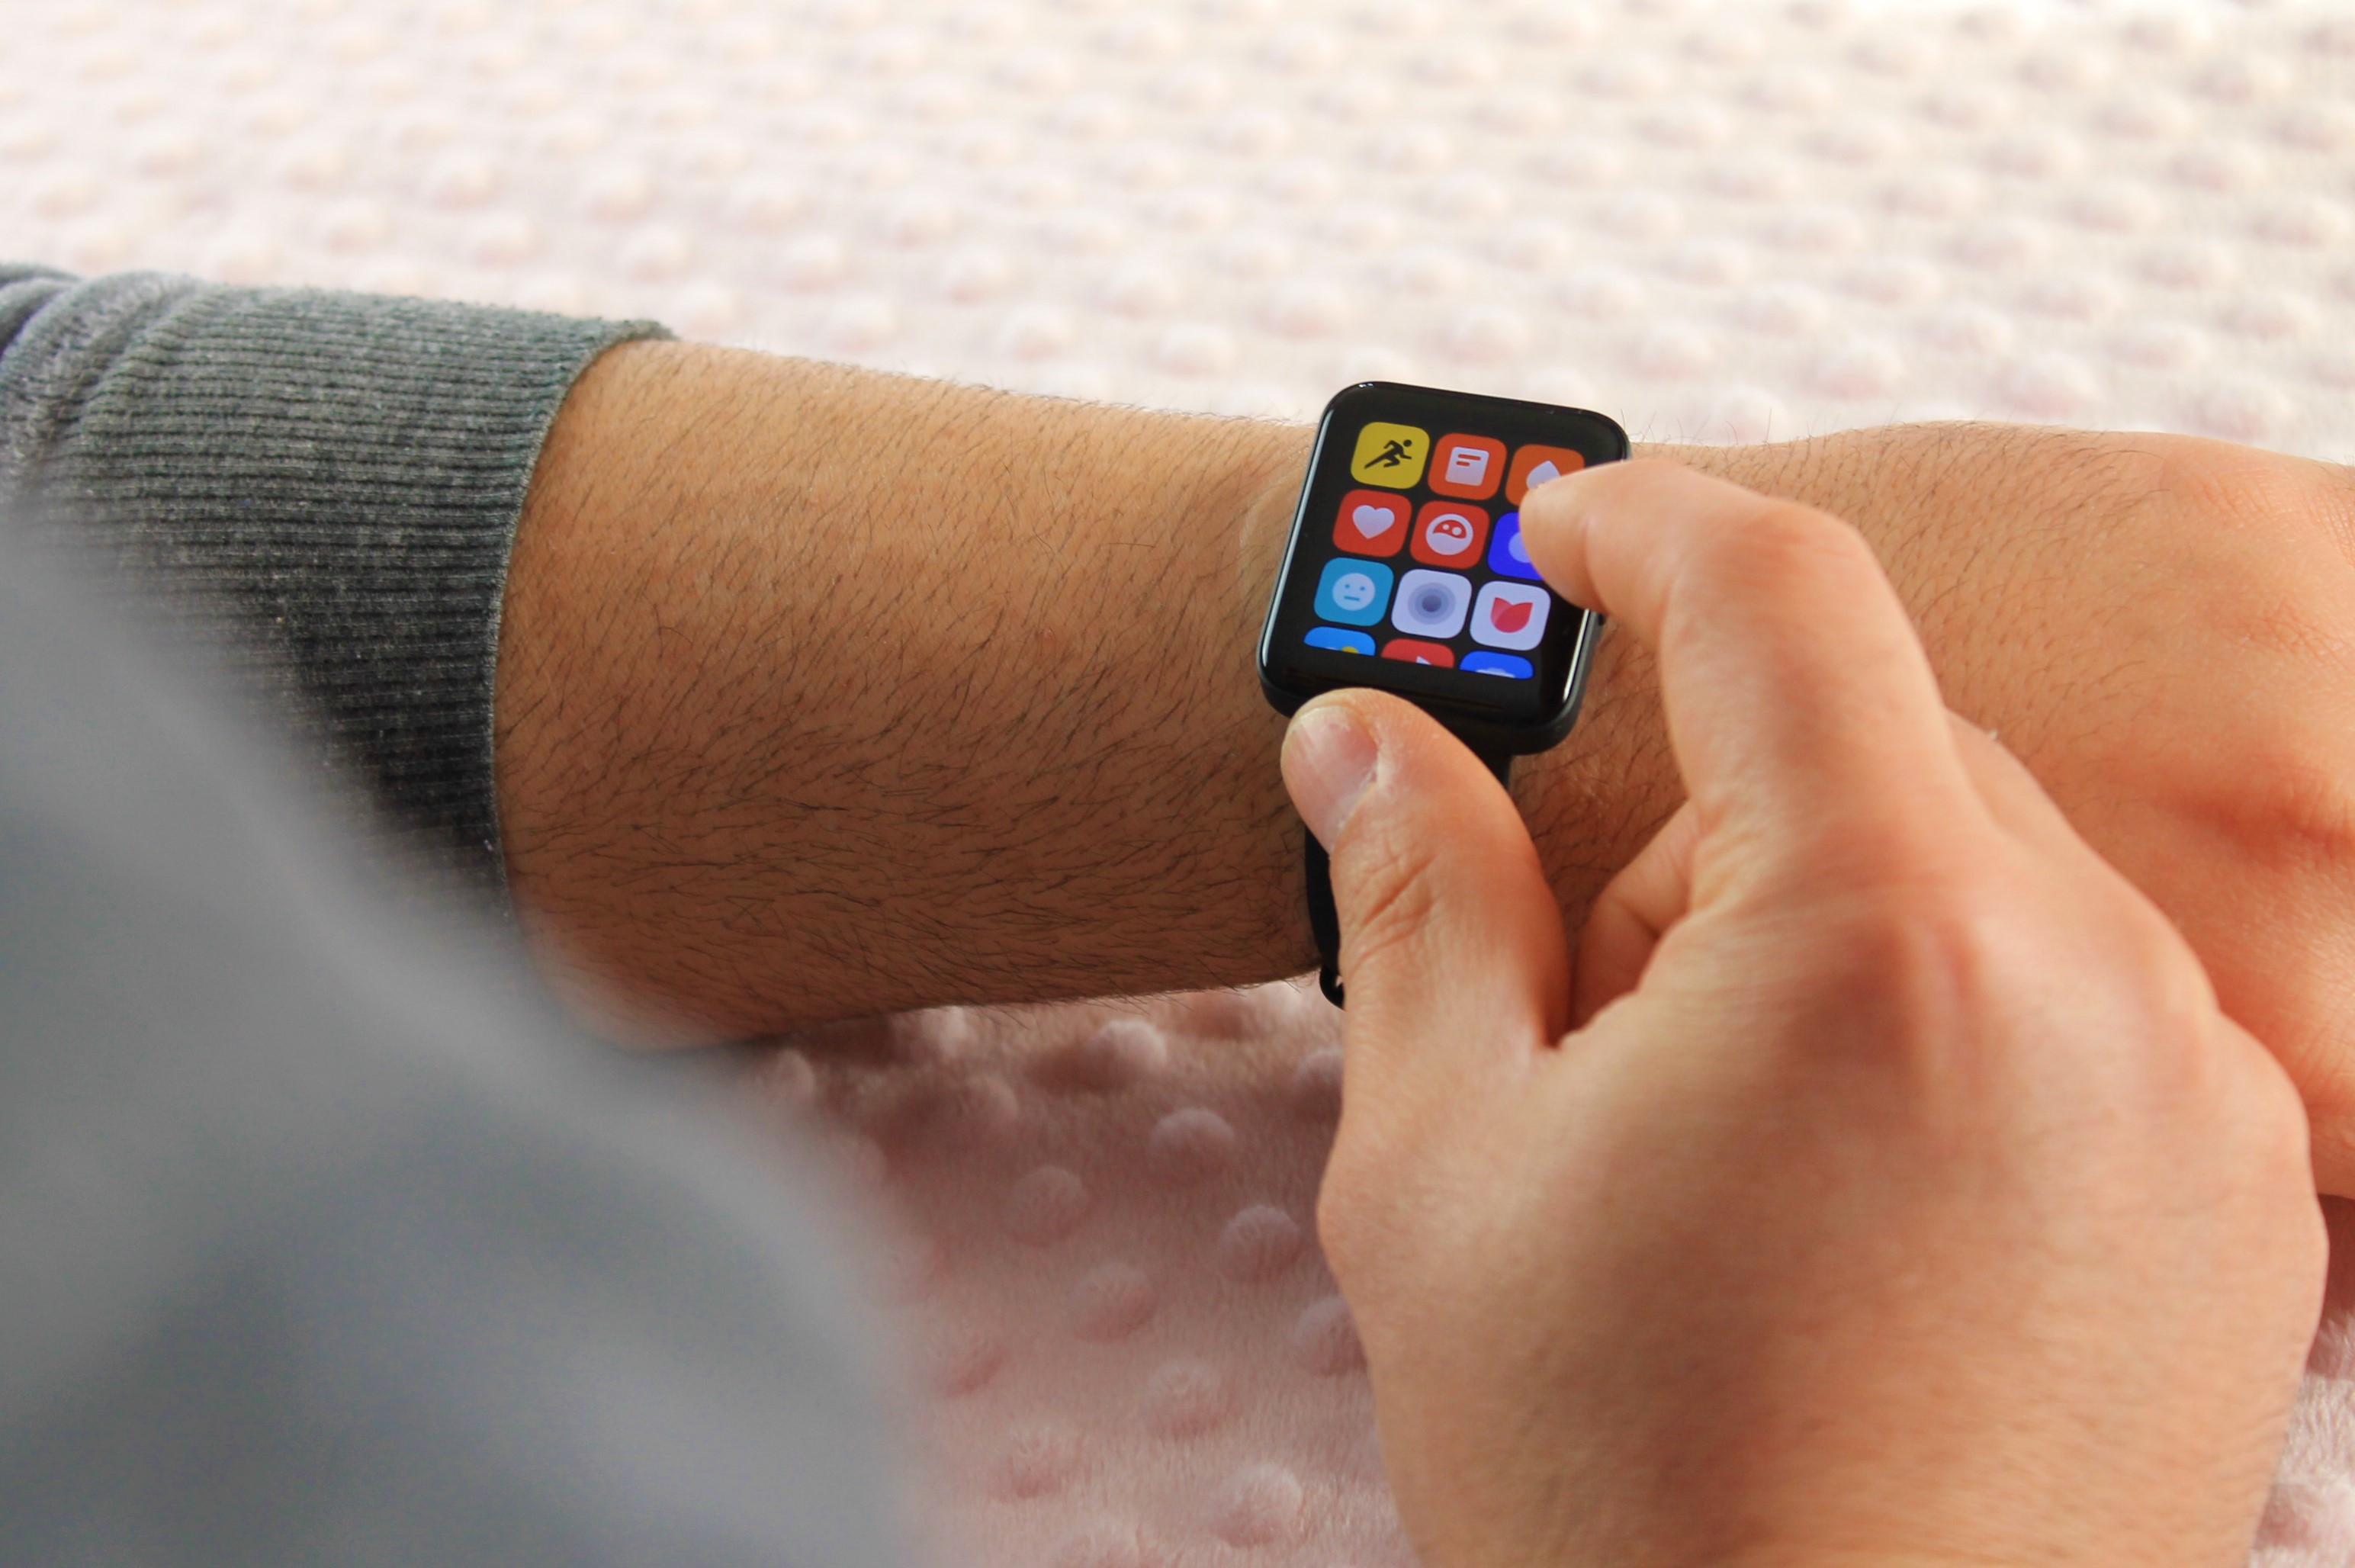 Redmi Watch 2 Lite: unboxing del nuevo smartwatch económico lanzado por  Xiaomi, Tecnología